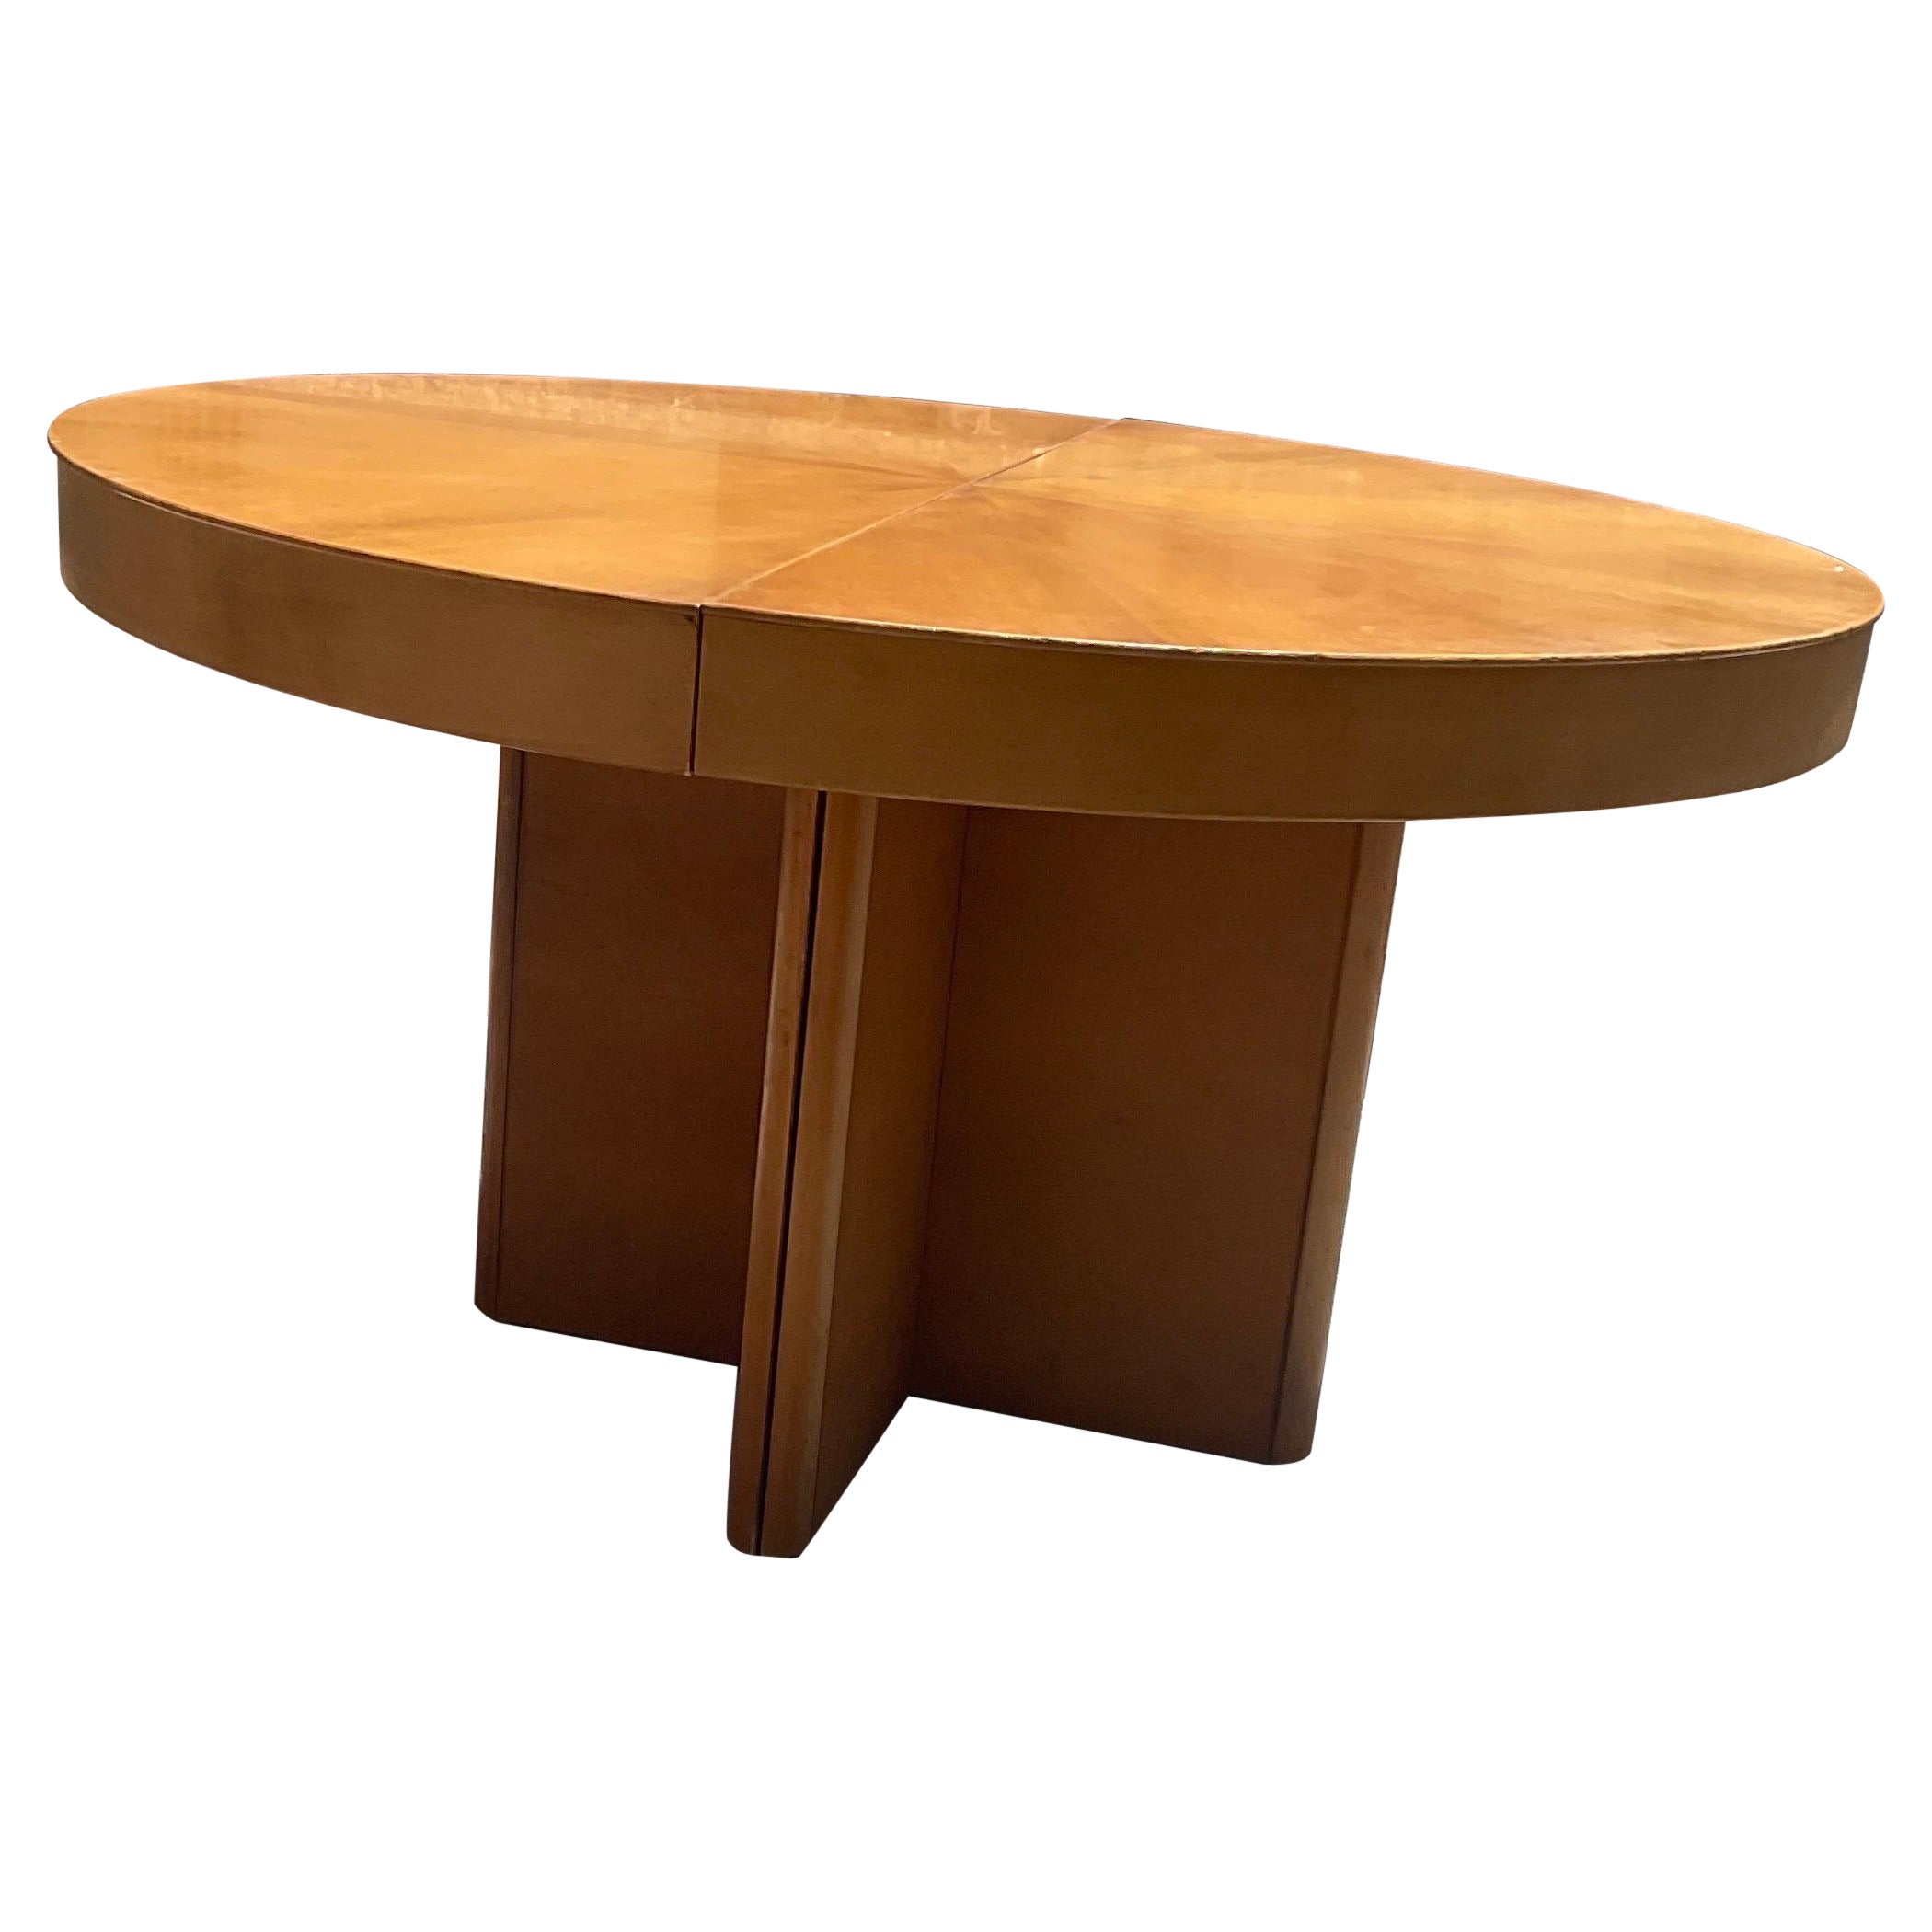 Fiorenza extendible round table in walnut by Tito Agnoli for Molteni, 70s